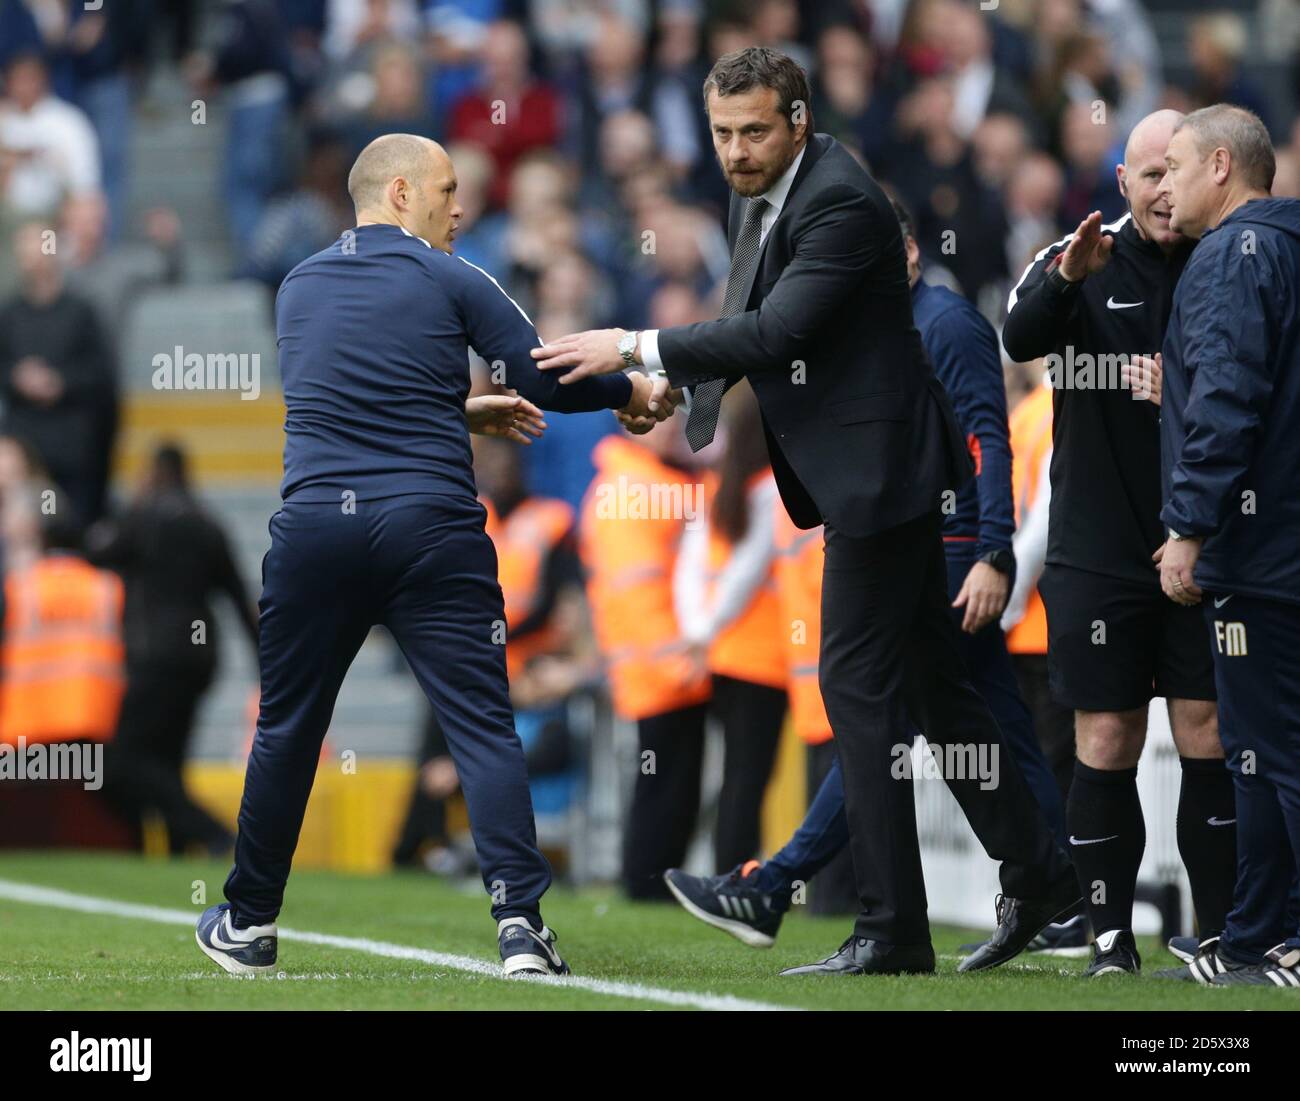 Alex Neil, directeur de Preston North End (à gauche), serre la main Fulham gestionnaire Slavisa Jokanovic après le coup de sifflet final Banque D'Images